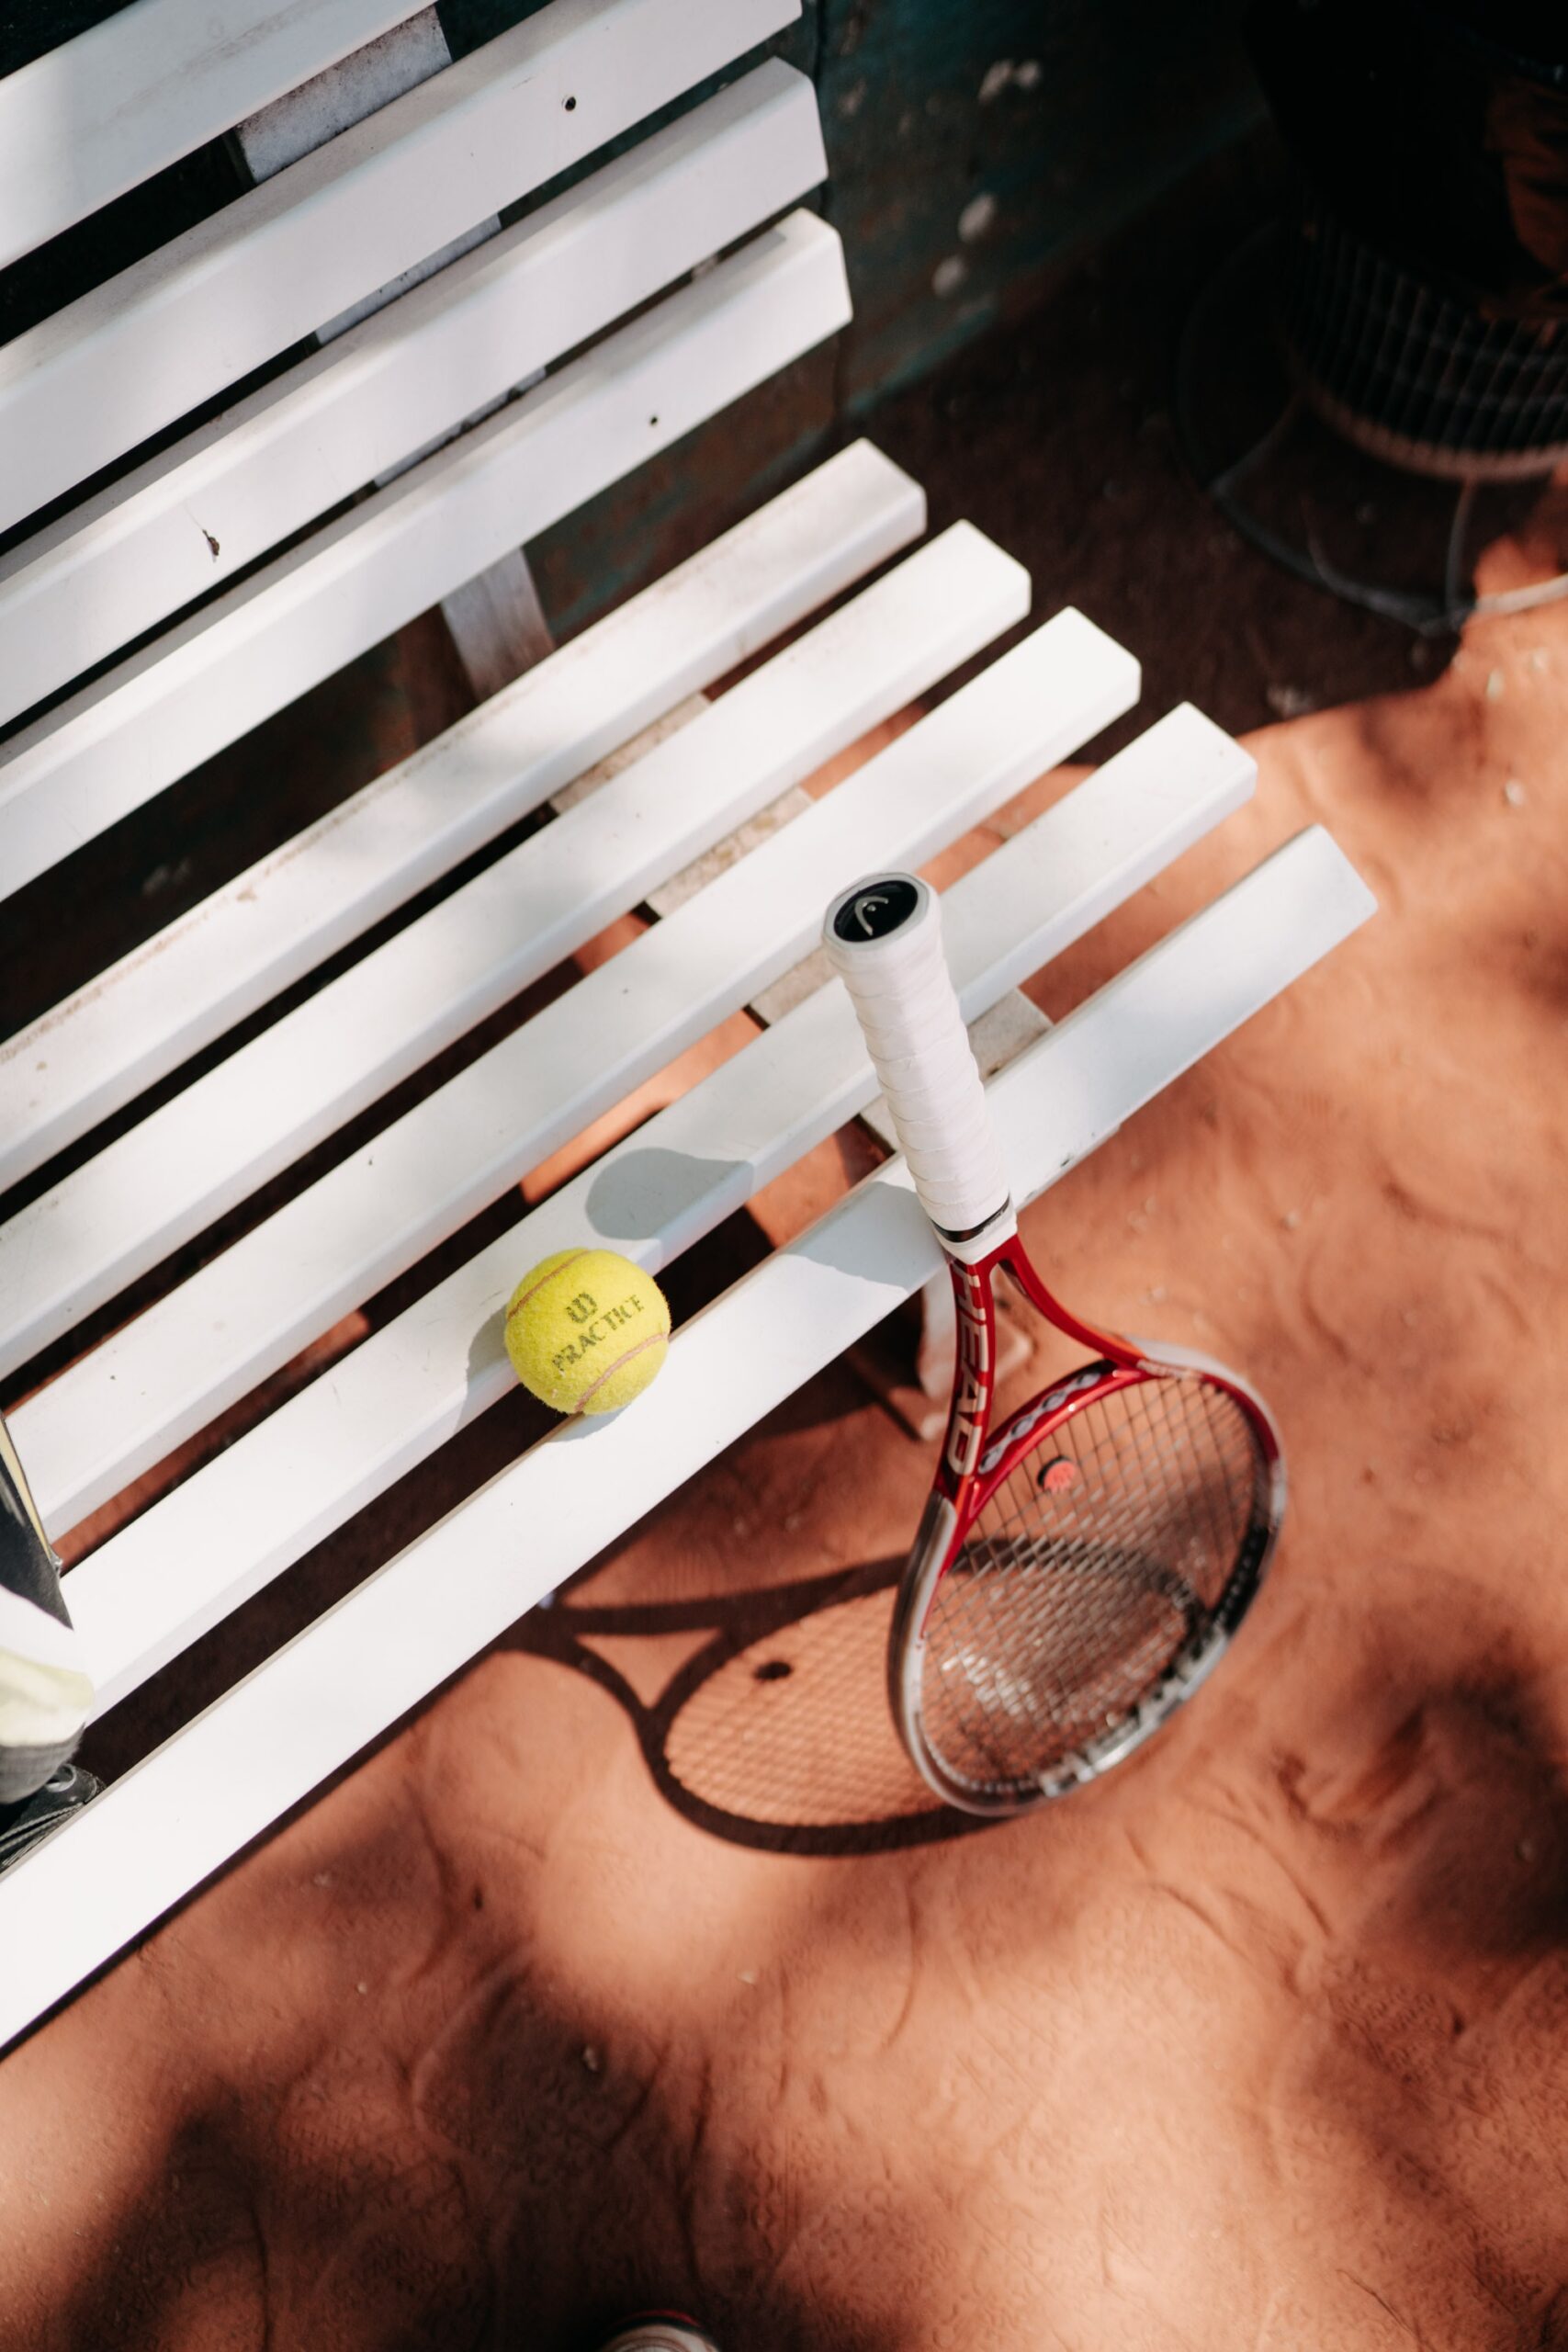 Tennisracket leunt tegen een wit bankje op de tennisbaan. Op het witte bankje ligt een lichtgroene tennisbal.